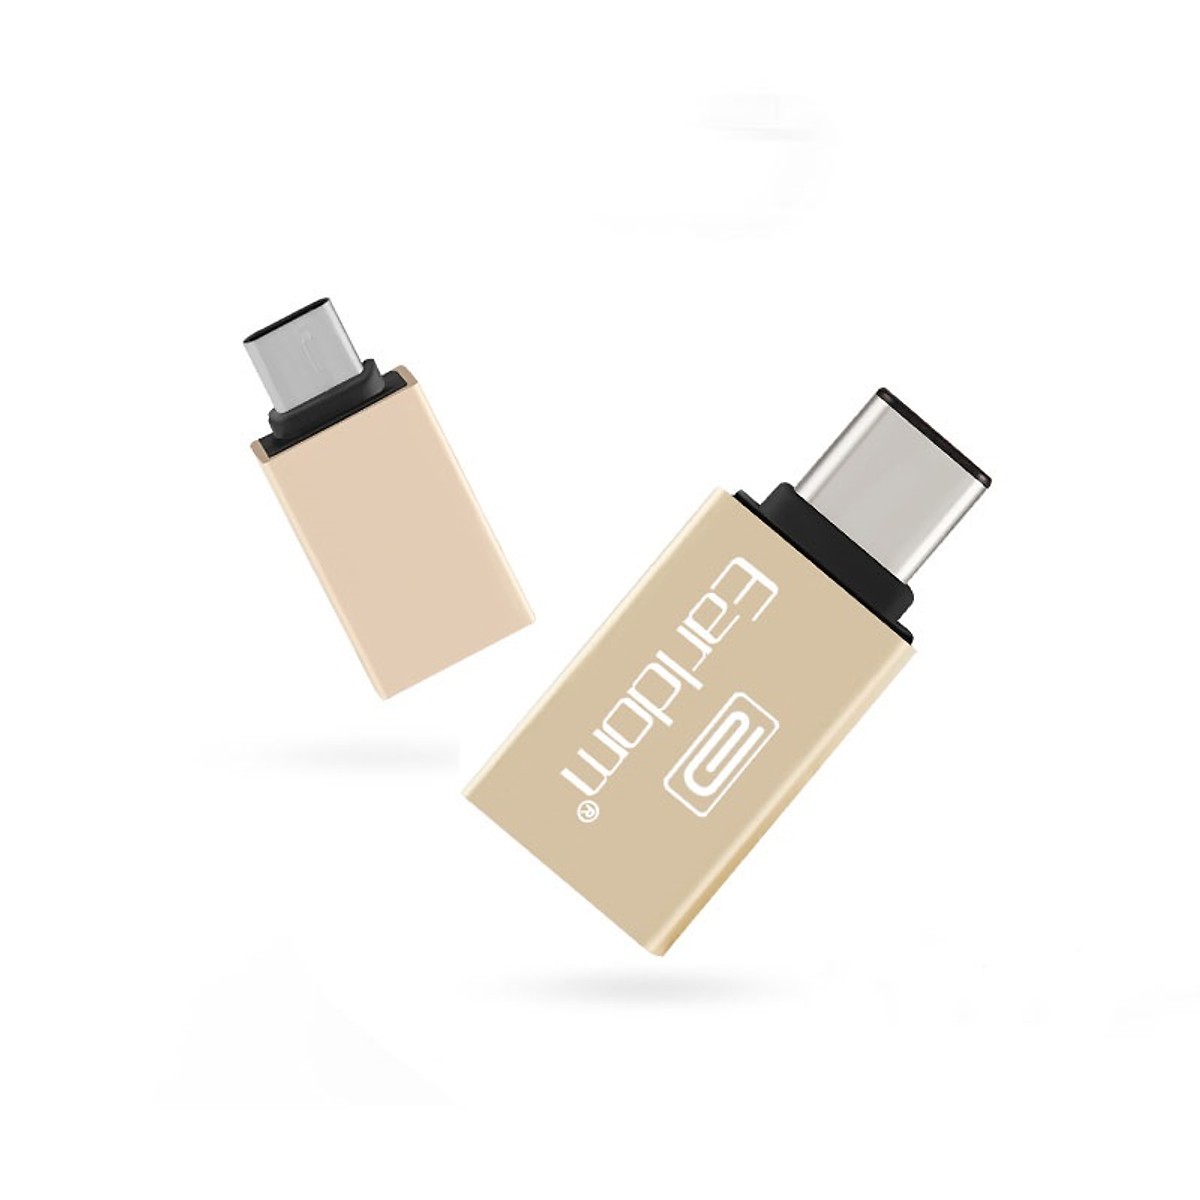 Đầu Chuyển USB Type C sang USB 3.0 Earldom  (USB OTG type C) - Hàng Chính Hãng